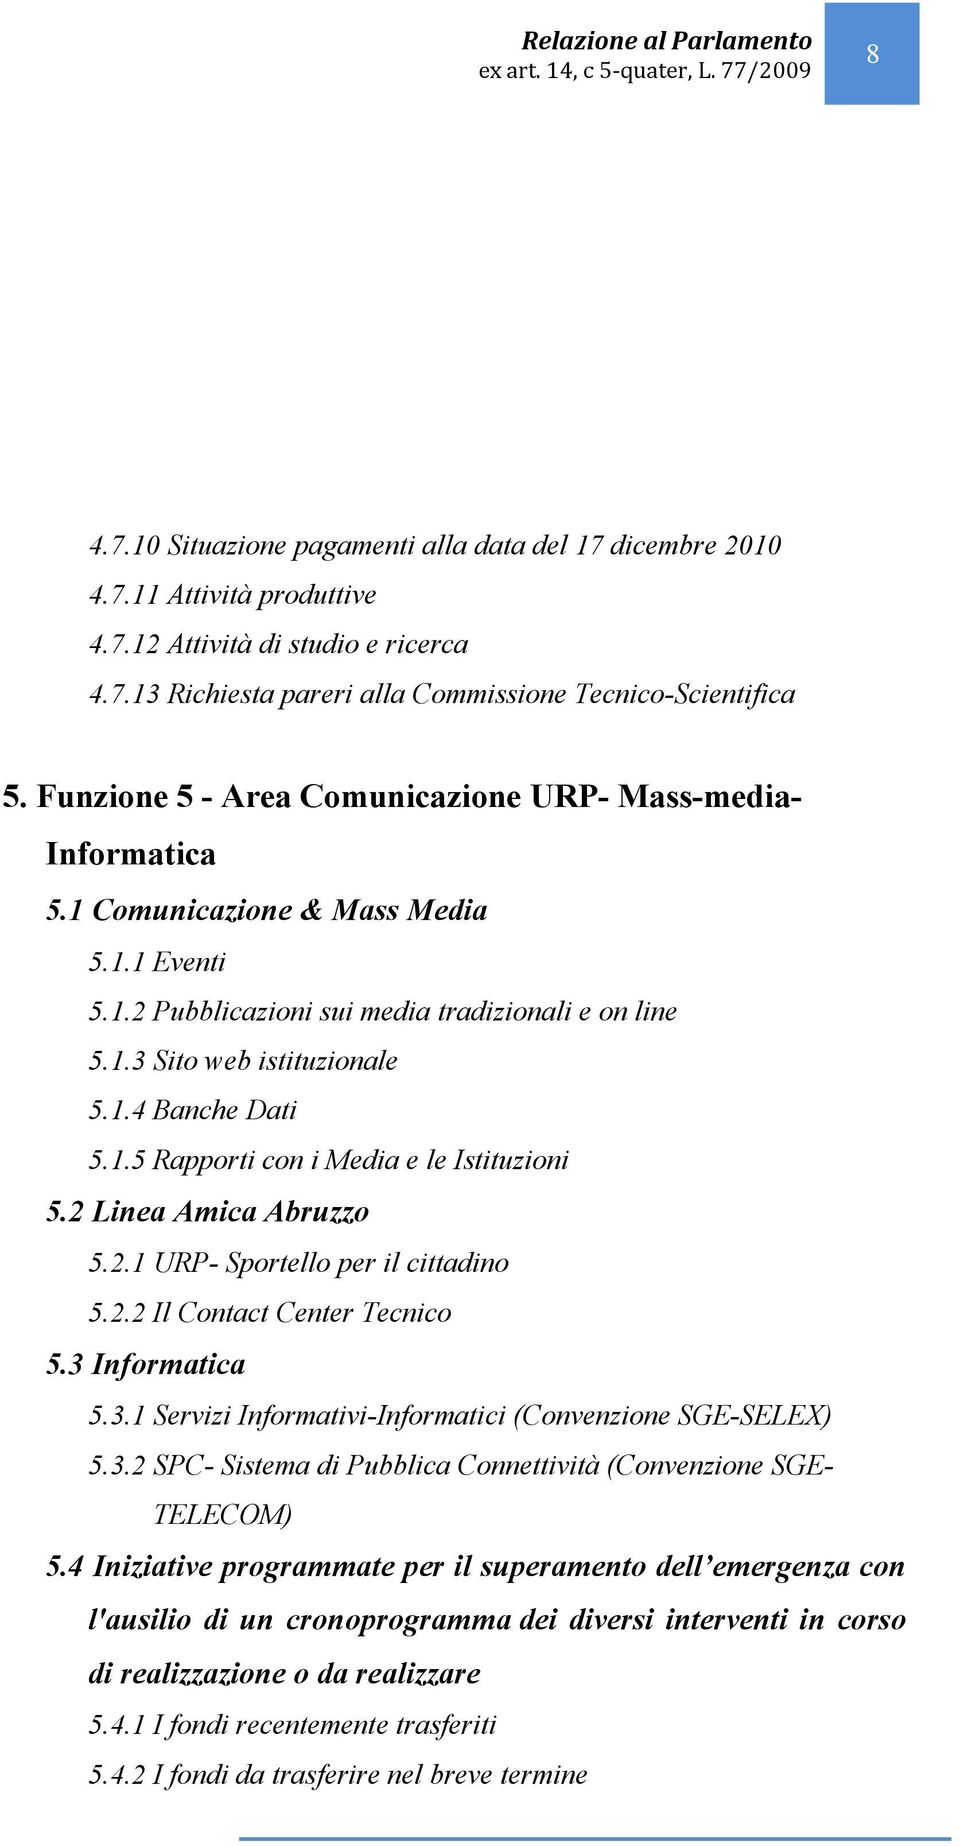 1.5 Rapporti con i Media e le Istituzioni 5.2 Linea Amica Abruzzo 5.2.1 URP- Sportello per il cittadino 5.2.2 Il Contact Center Tecnico 5.3 Informatica 5.3.1 Servizi Informativi-Informatici (Convenzione SGE-SELEX) 5.